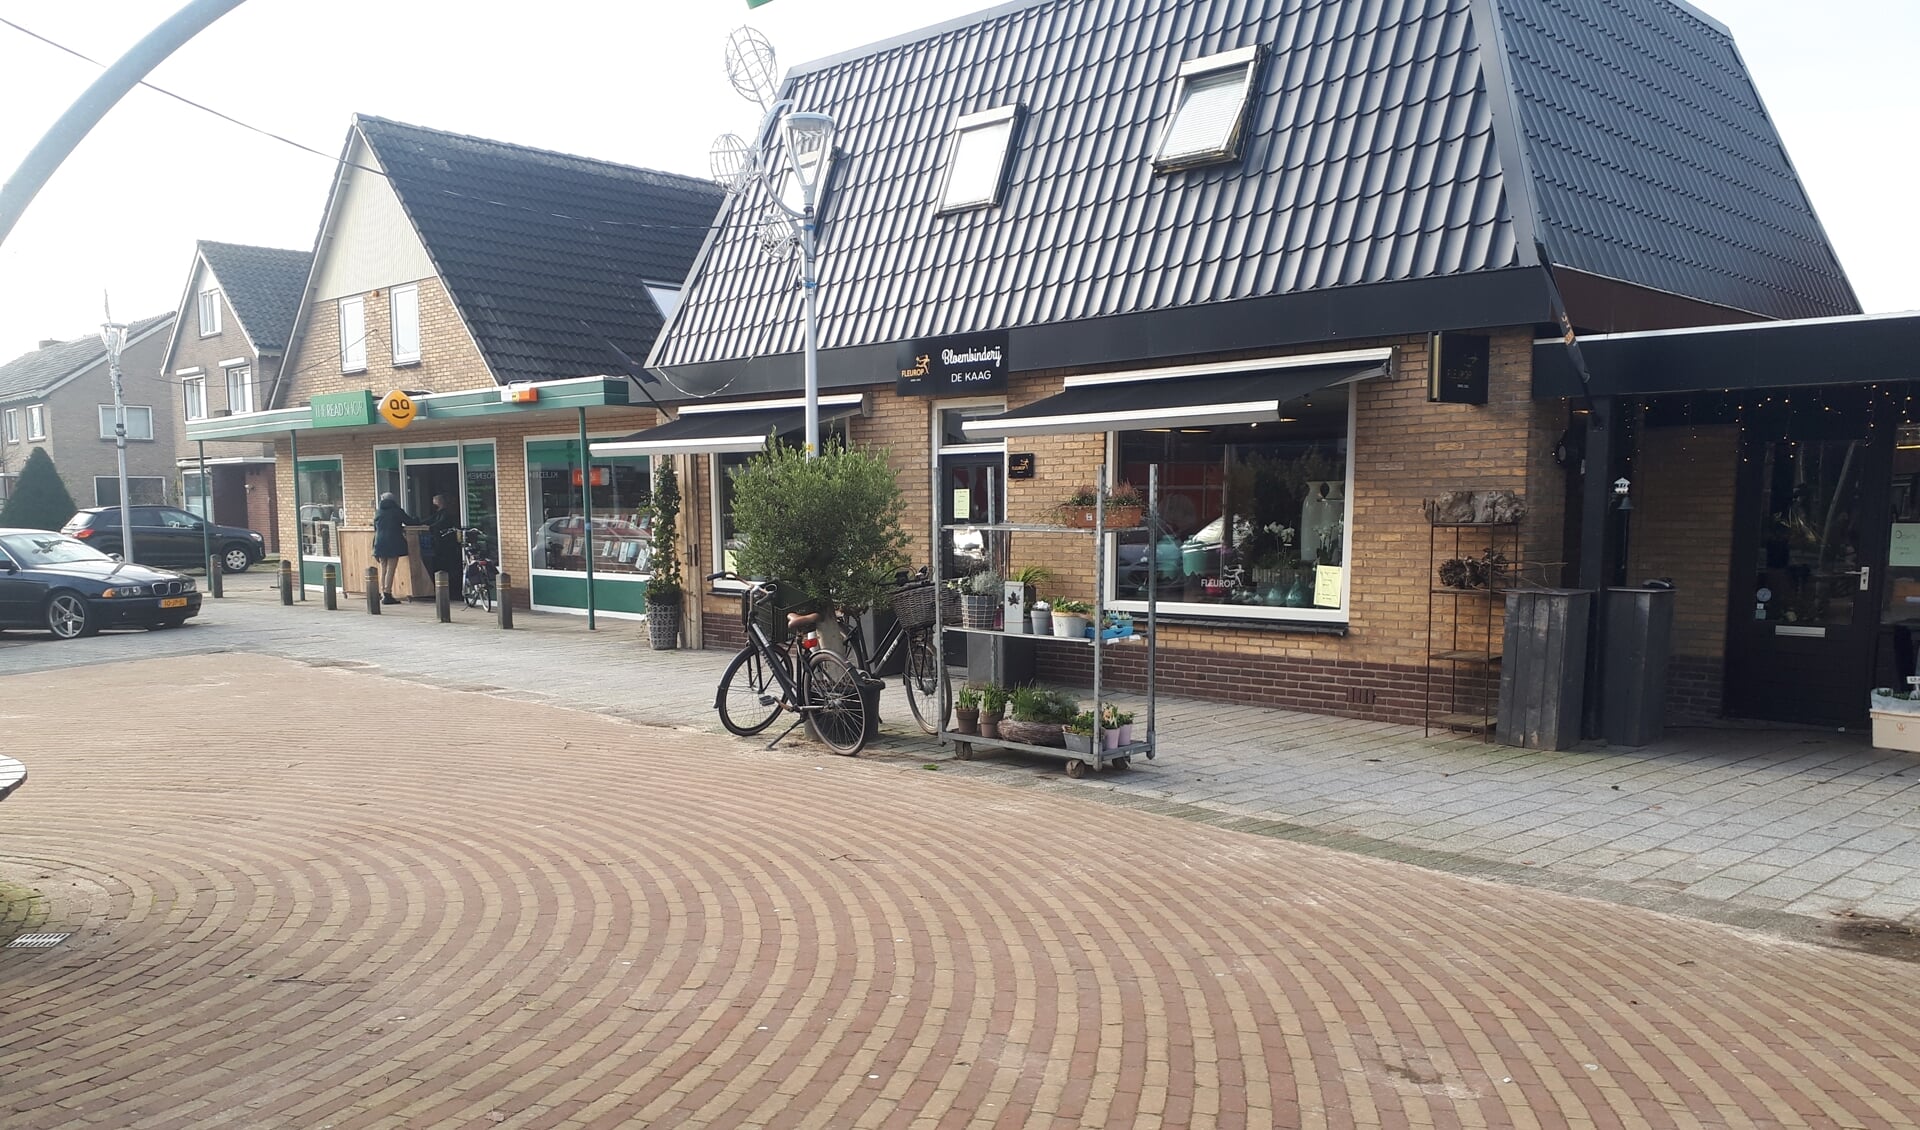 In Spanbroek is de winkelstraat ook vrijwel leeg.